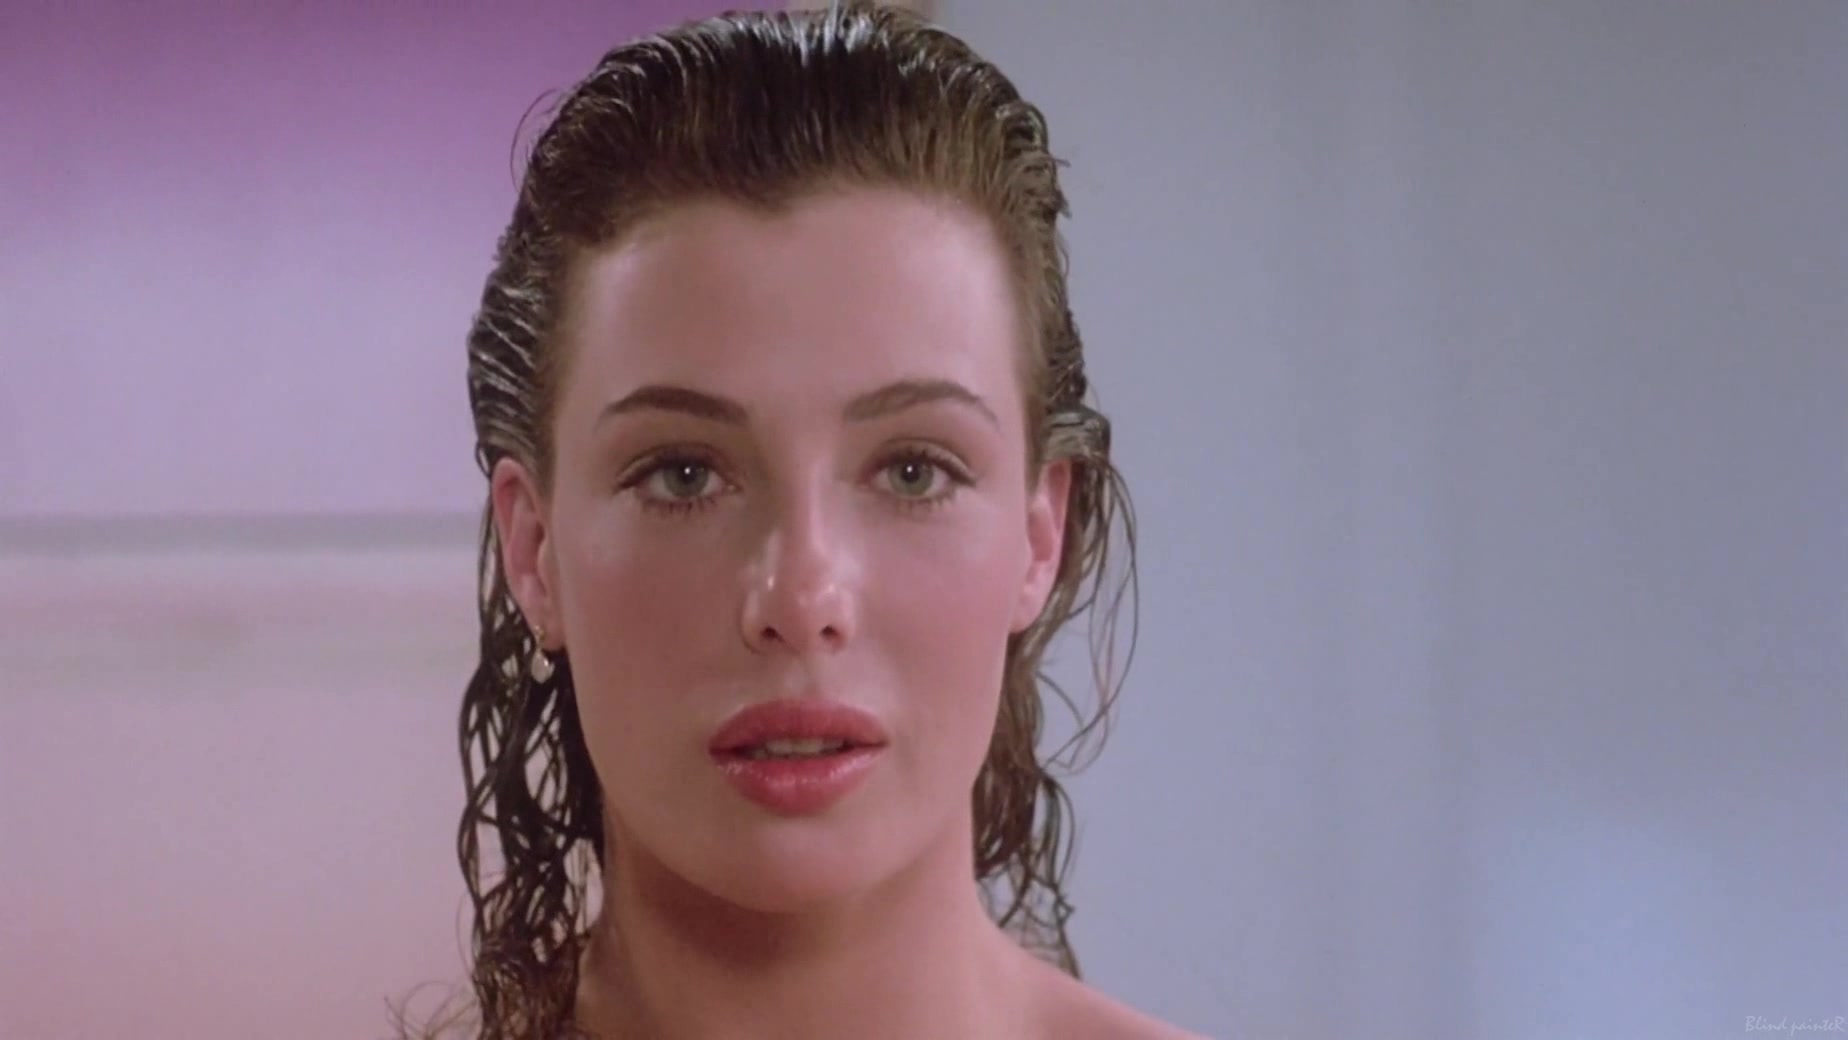 Kelly Lebrock Porn Anal - Kelly LeBrock nude - The Woman in Red (1984) Video Â» Best Sexy Scene Â»  HeroEro Tube